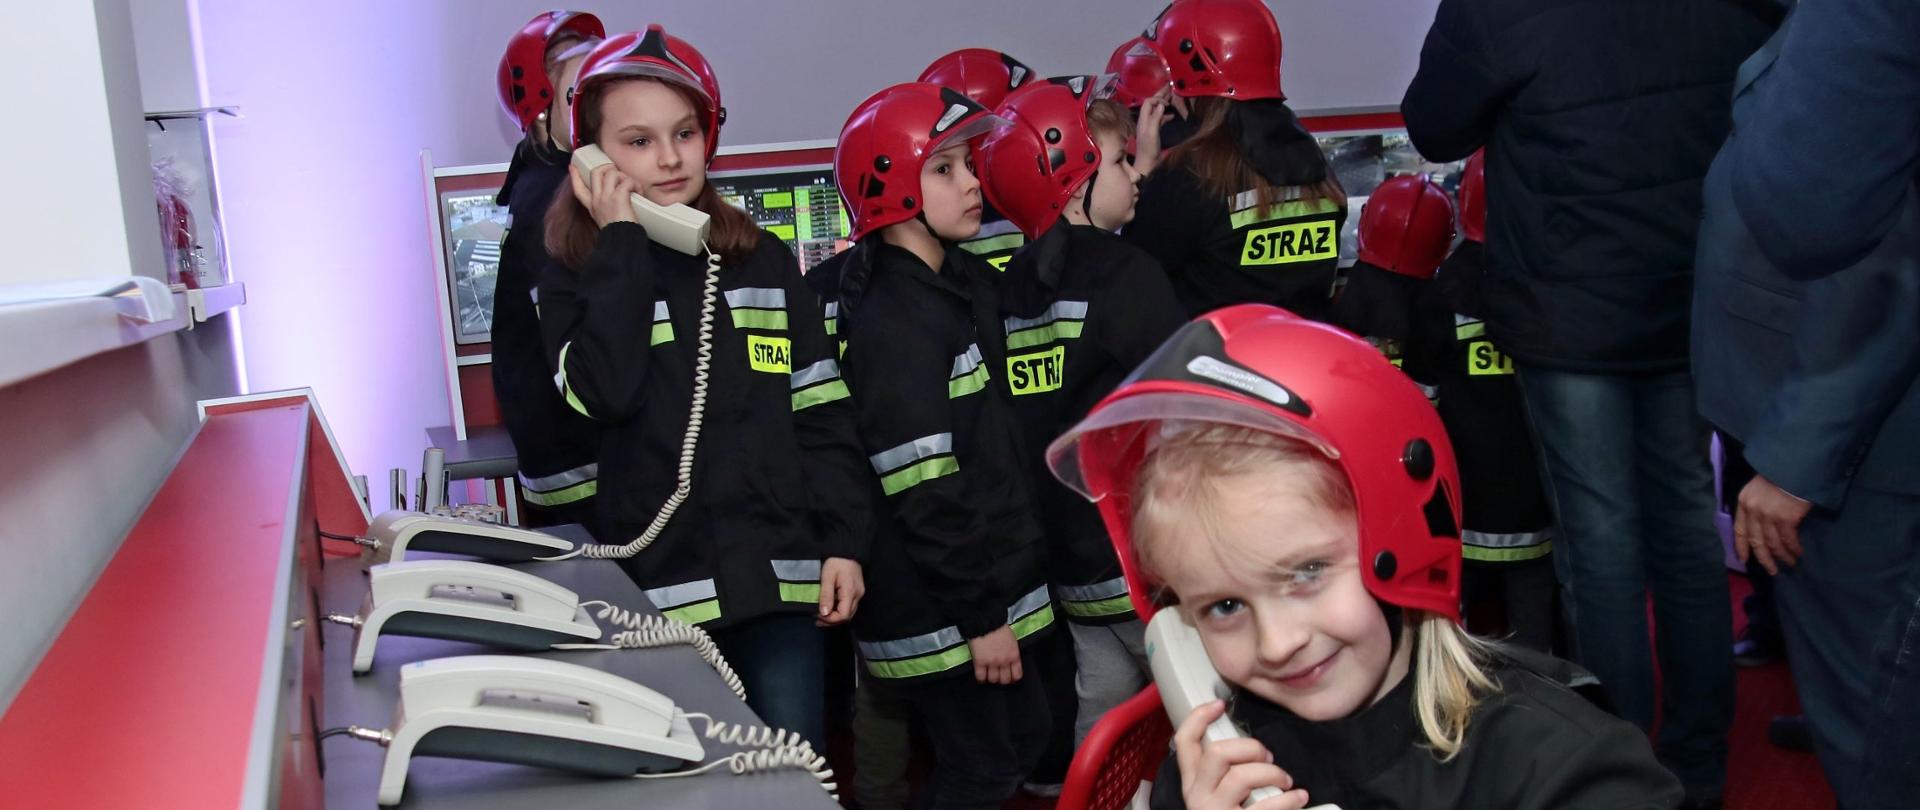 Zdjęcie przedstawia dzieci ubrane w hełmy i kurtki bojowe strażackie zgromadzone w pomieszczeniu z biurkiem, na który stoją telefony stacjonarne. Dwie dziewczynki prowadzą rozmowy trzymając słuchawkę przy uchu.